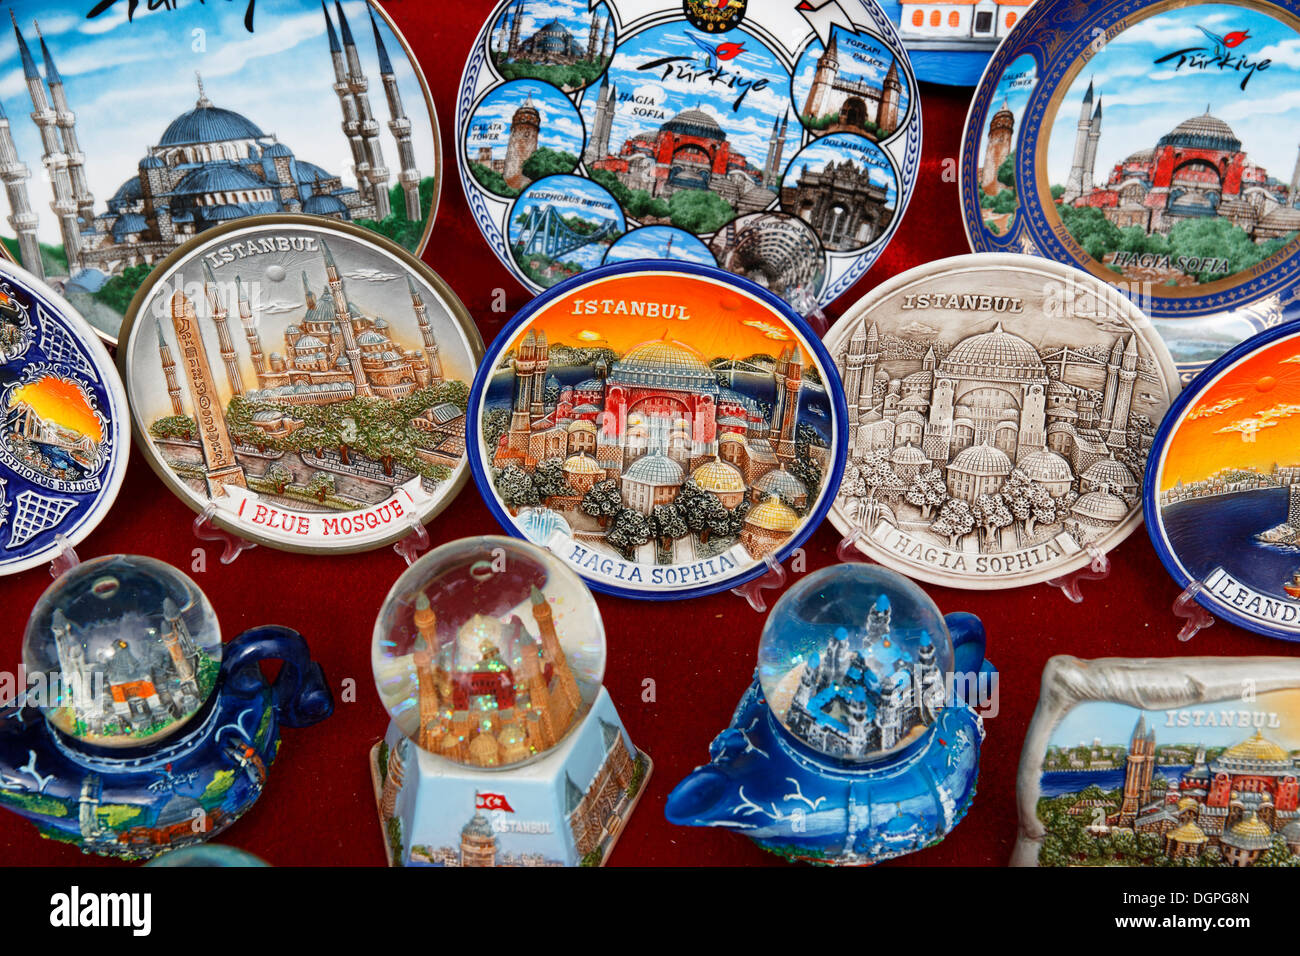 Souvenir-Stand auf der Straße, historischen Stadtteil Sultanahmet, Istanbul, Türkei, Europa, PublicGround Stockfoto